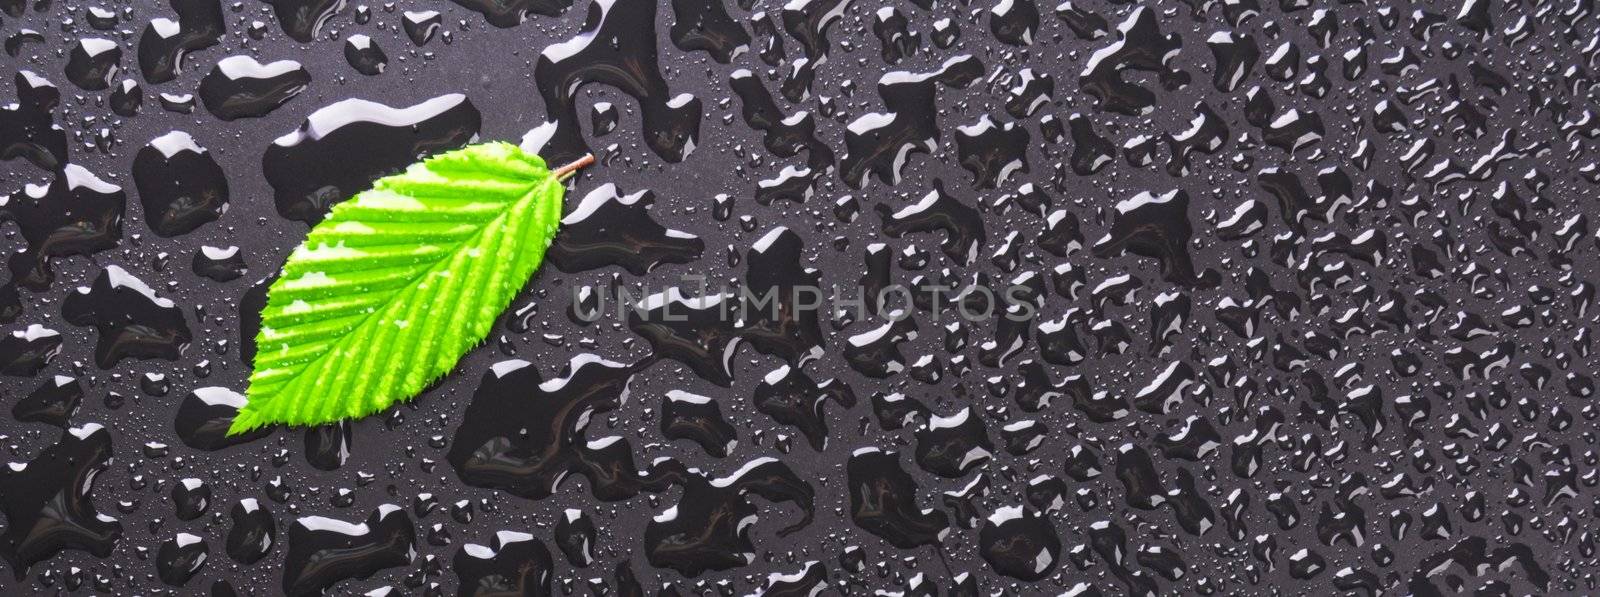 leaf and black background by gunnar3000